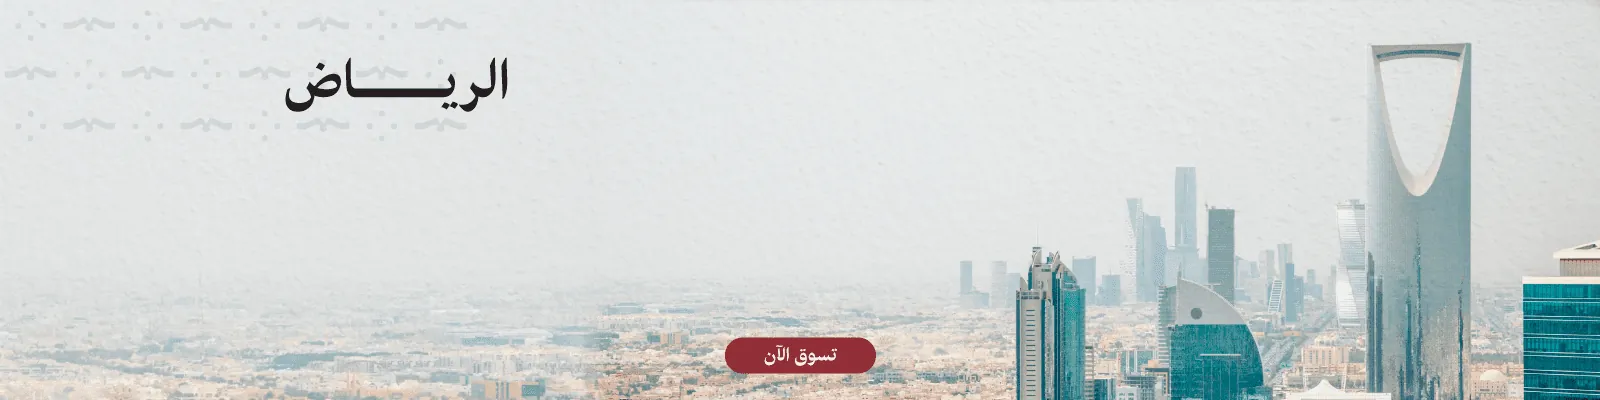 Founding Day Riyadh Webnew-media